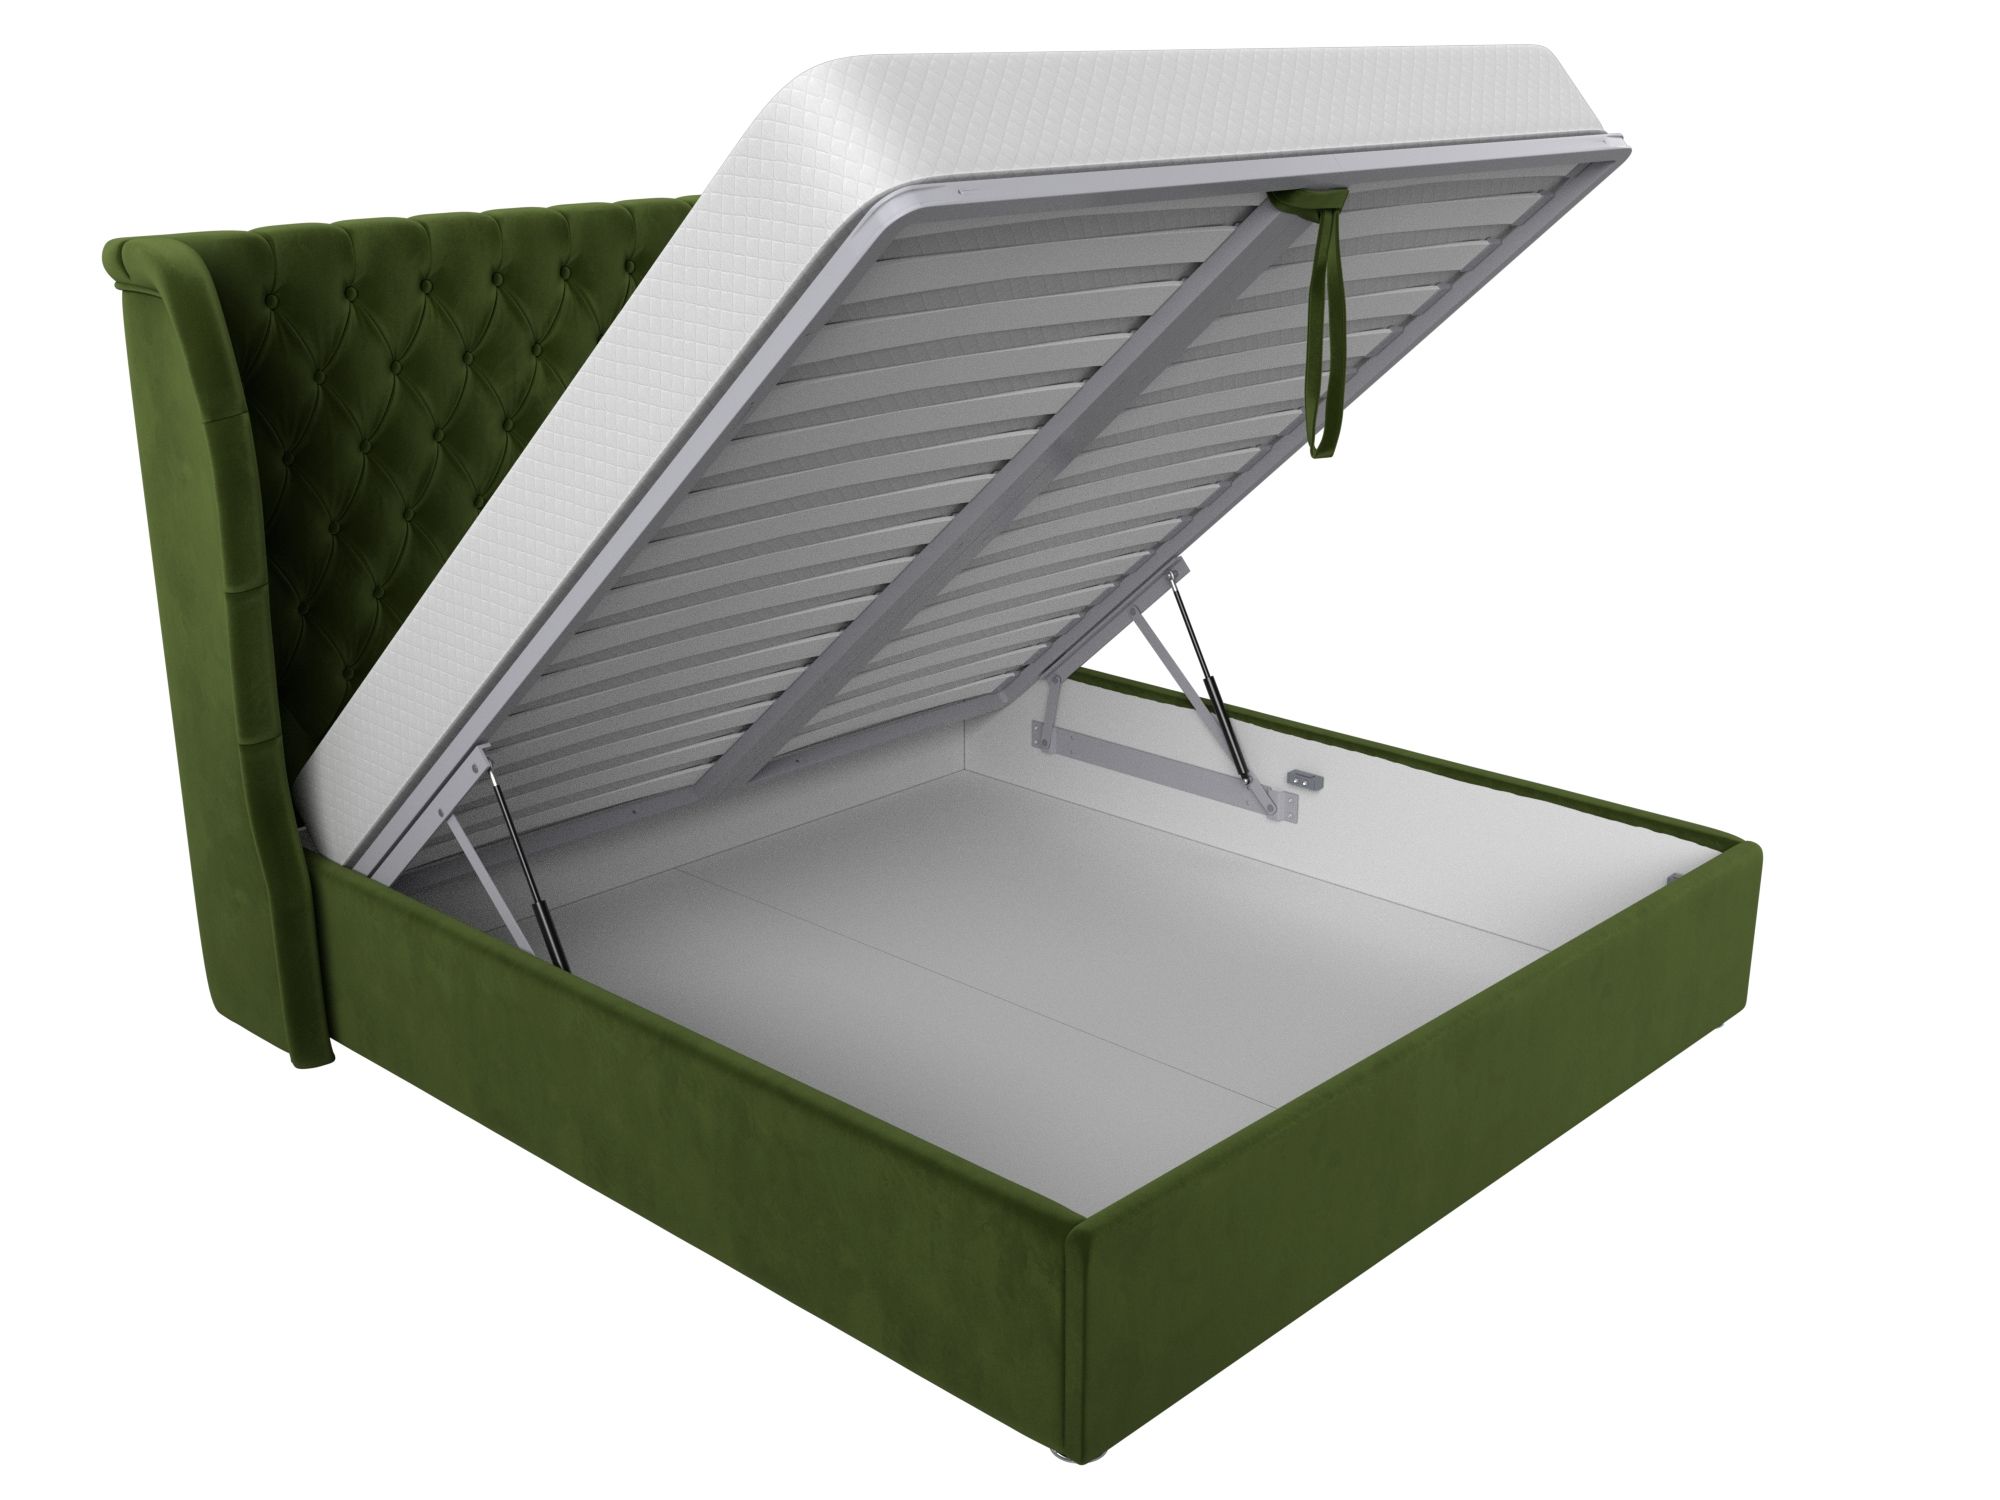 Интерьерная кровать Далия 200 (Зеленый)